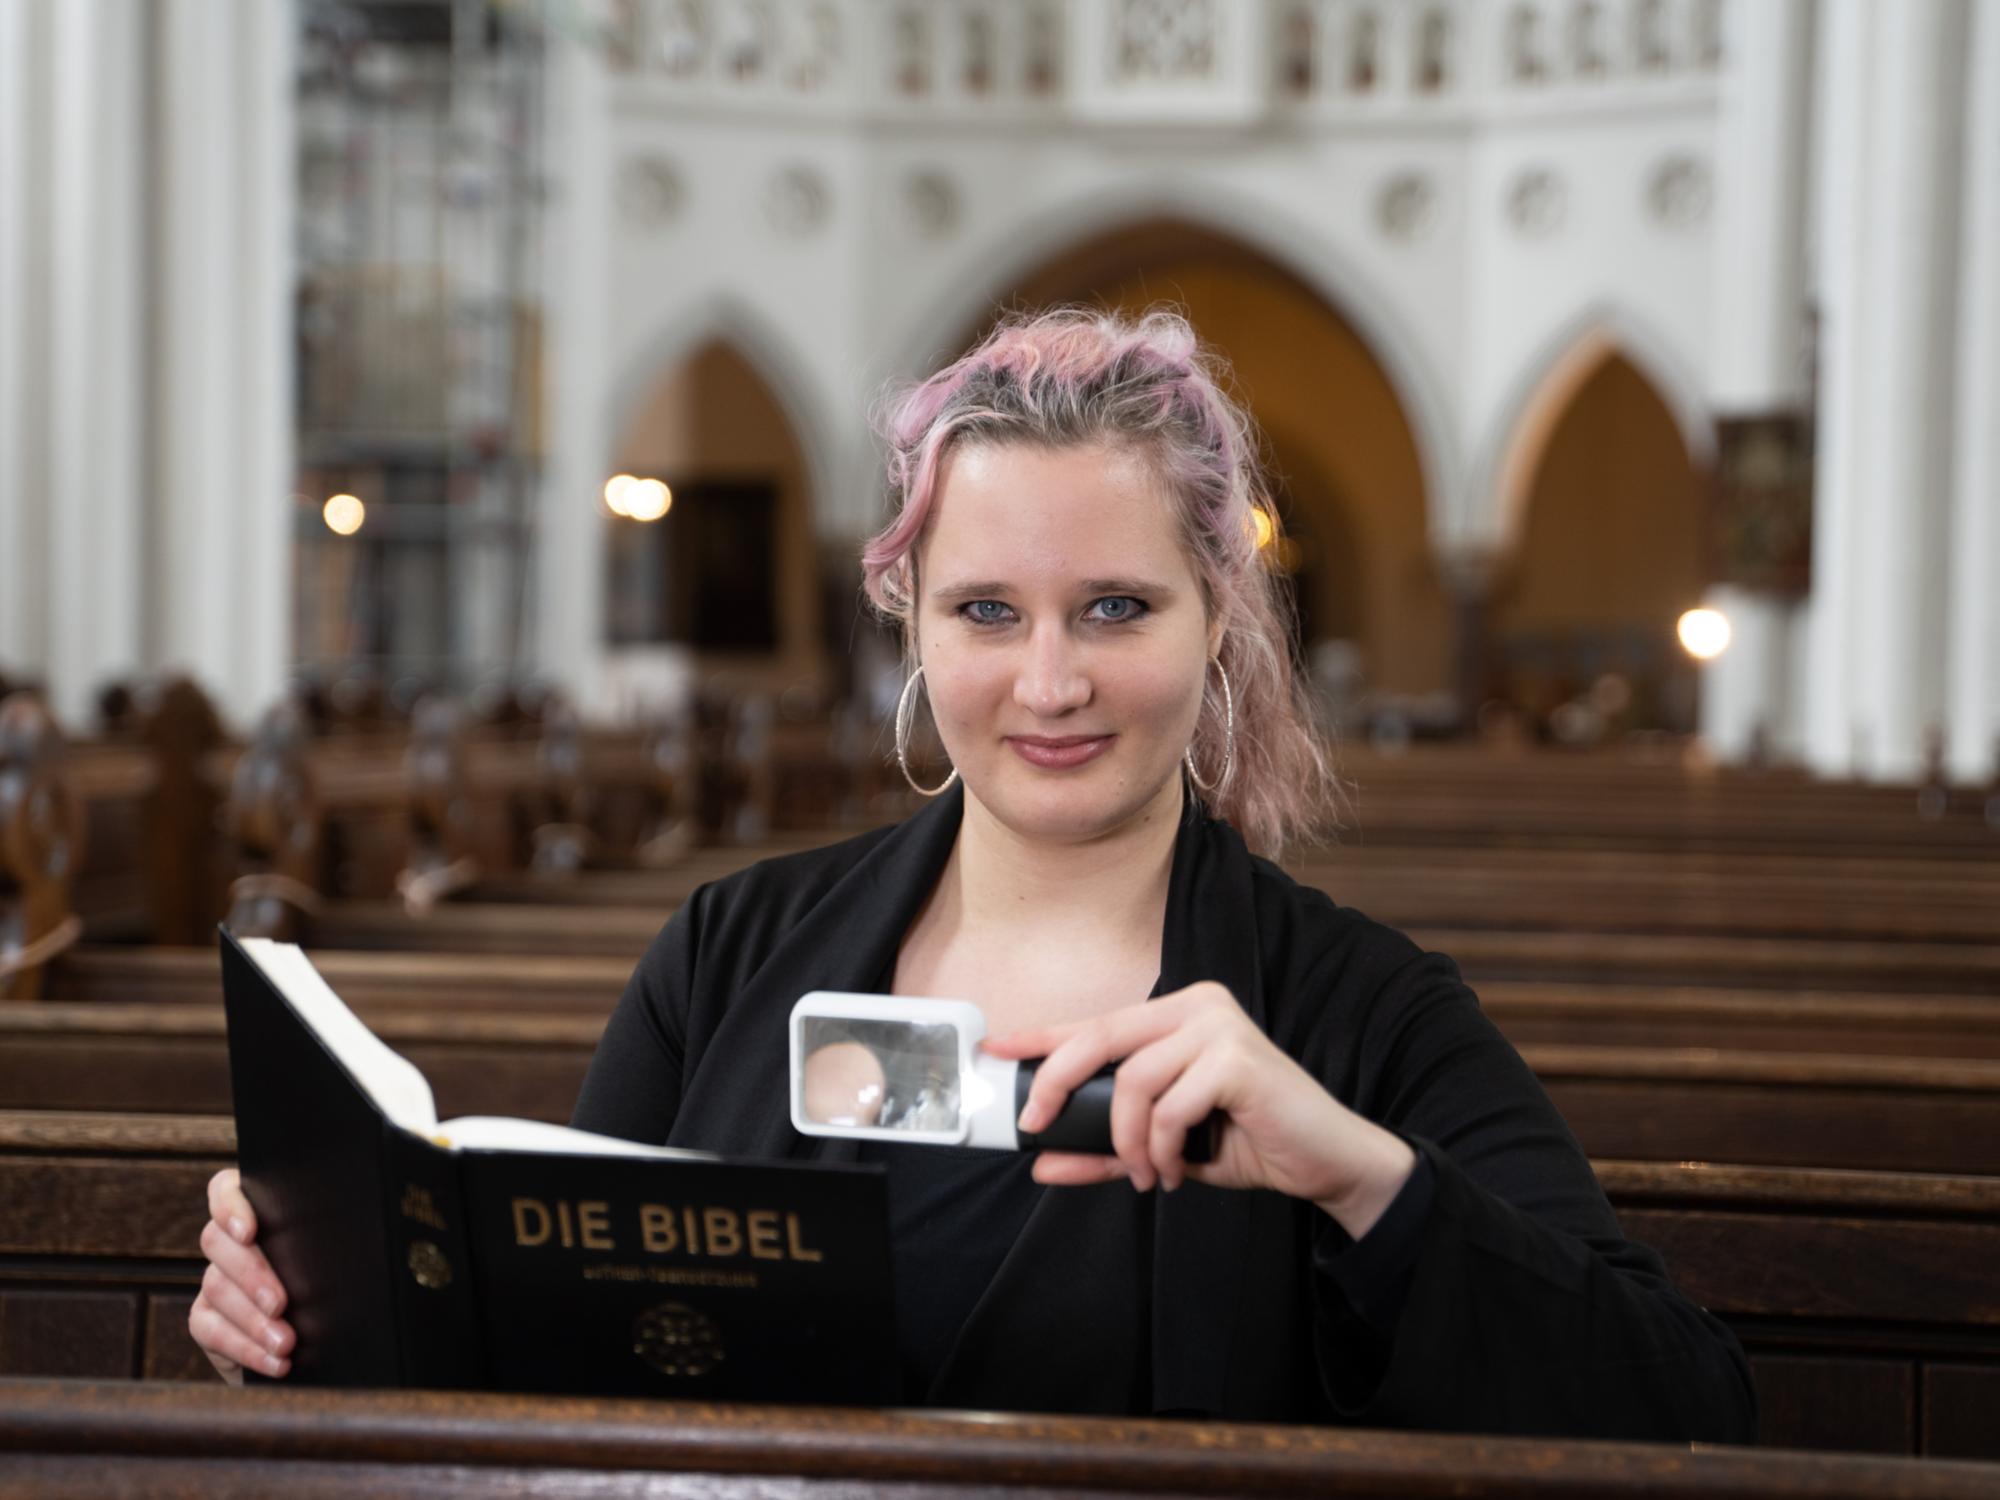 Foto: Eine Frau Mitte 20 sitzt in einer Kirchenbank und lächelt in die Kamera, in einer Hand eine Leuchtlupe, in der anderen eine Bibel. Sie hat langes, dunkelblondes Haar mit rötlichen Strähnchen und trägt große Ohrringe.